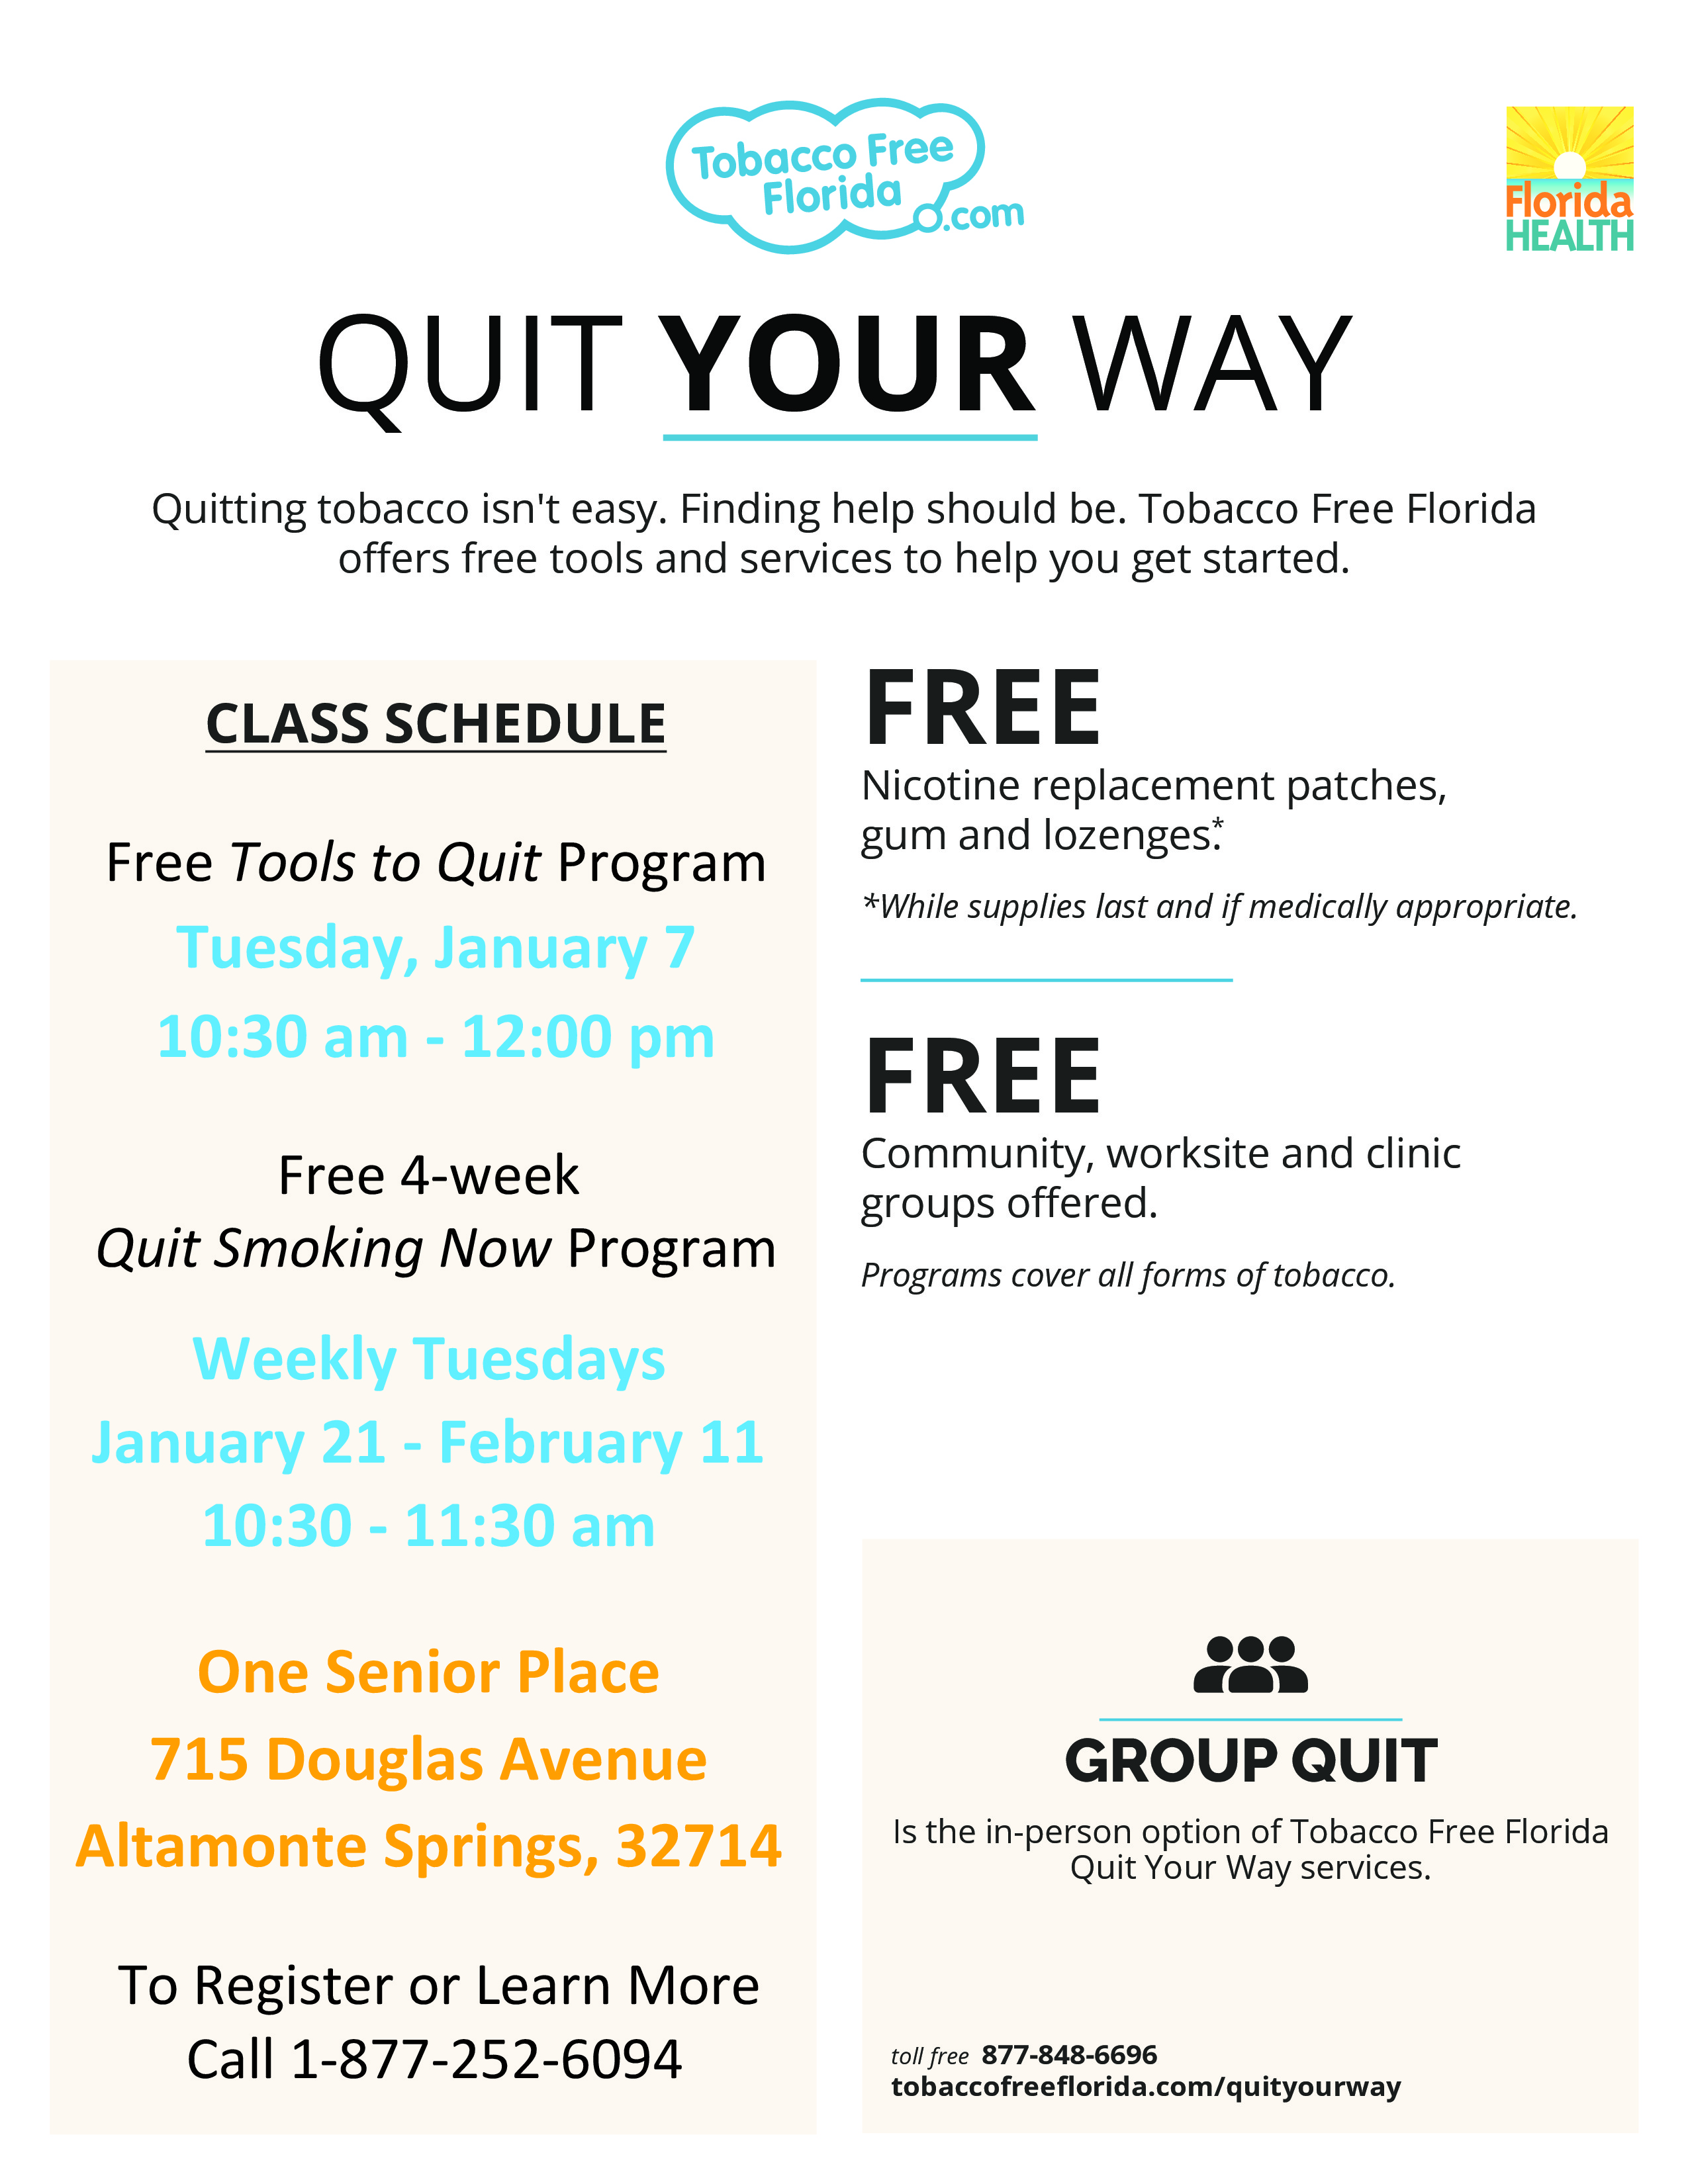 Free 4-Week Quit Smoking Now Program